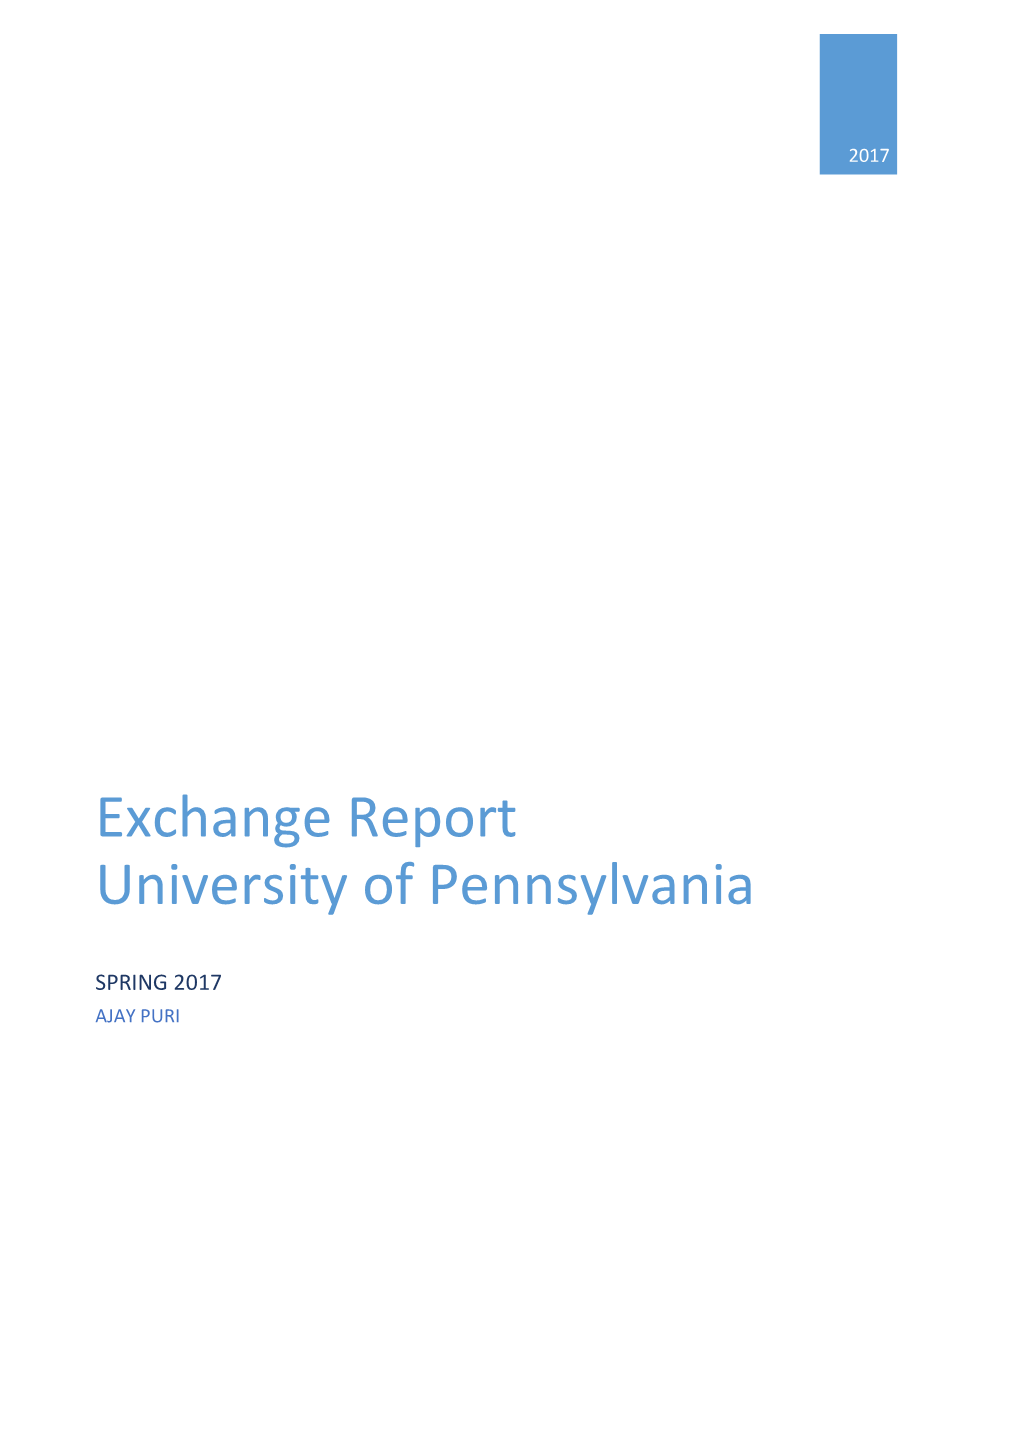 Exchange Report University of Pennsylvania